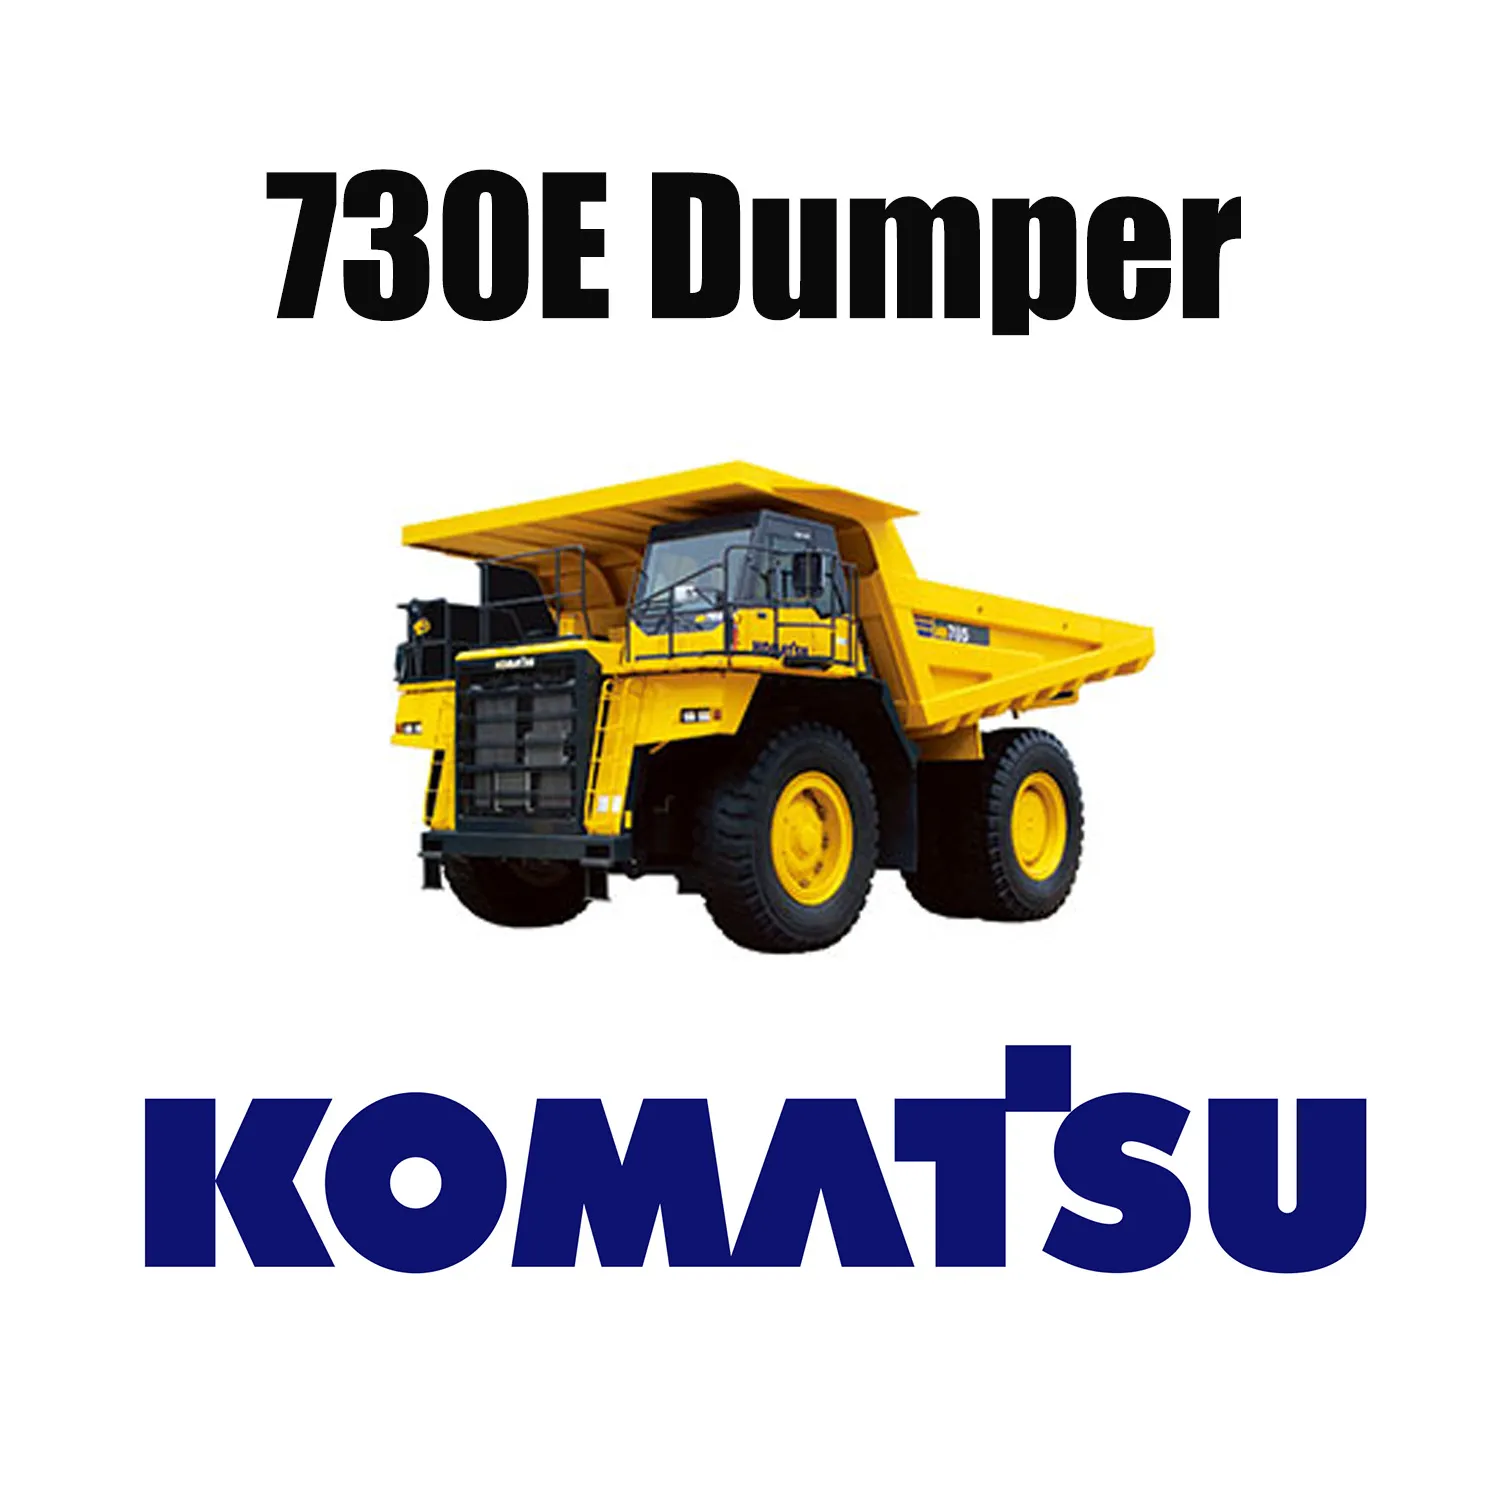 Самосвалы KOMATSU 730E с шинами Giant 37.00R57 OTR для горнодобывающей промышленности